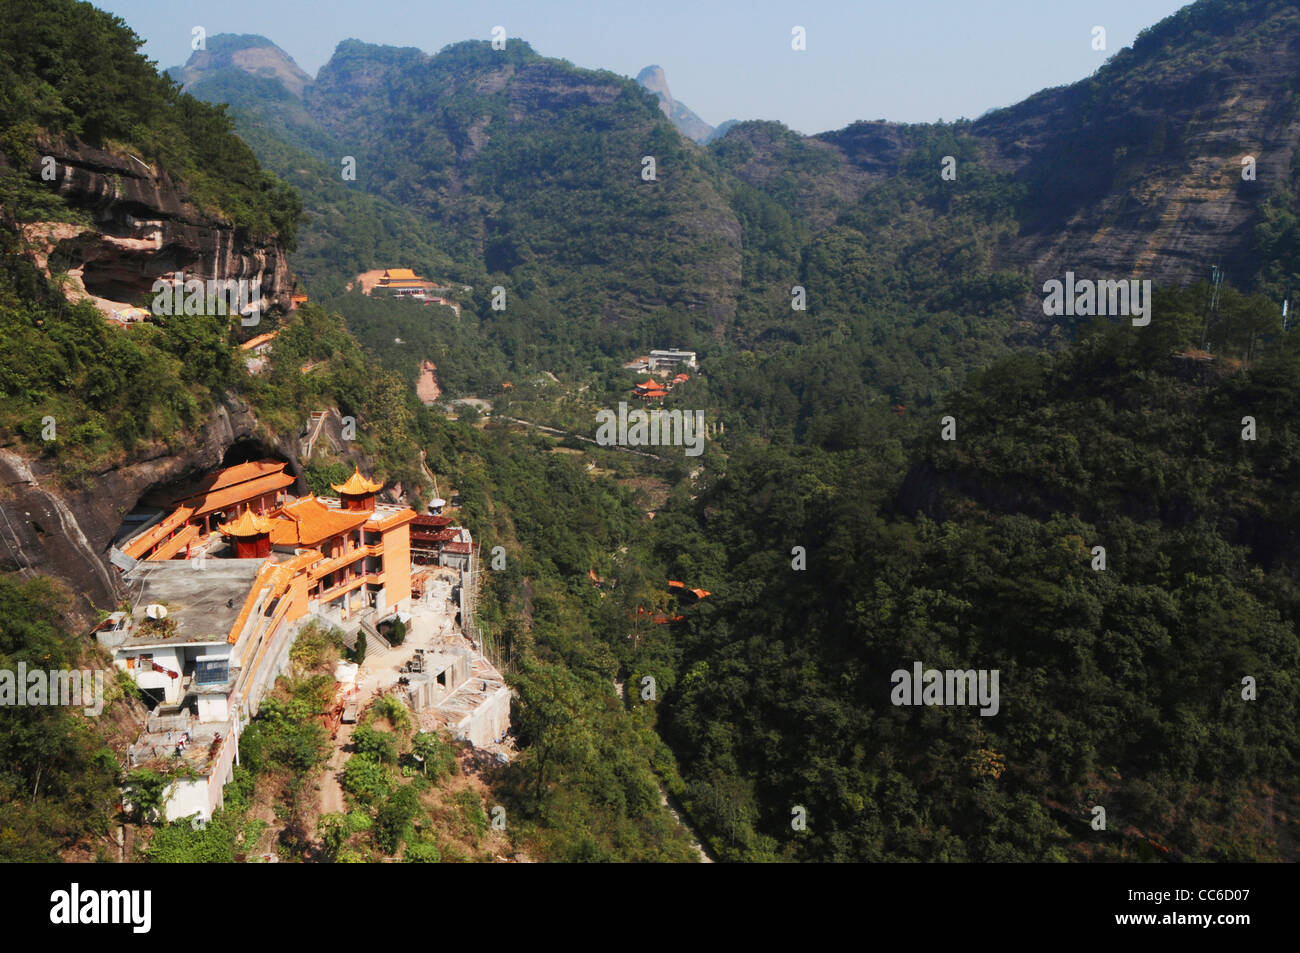 Landscape of Qingshou Rock, Duqiao Mountain, Yulin, Guangxi , China Stock Photo